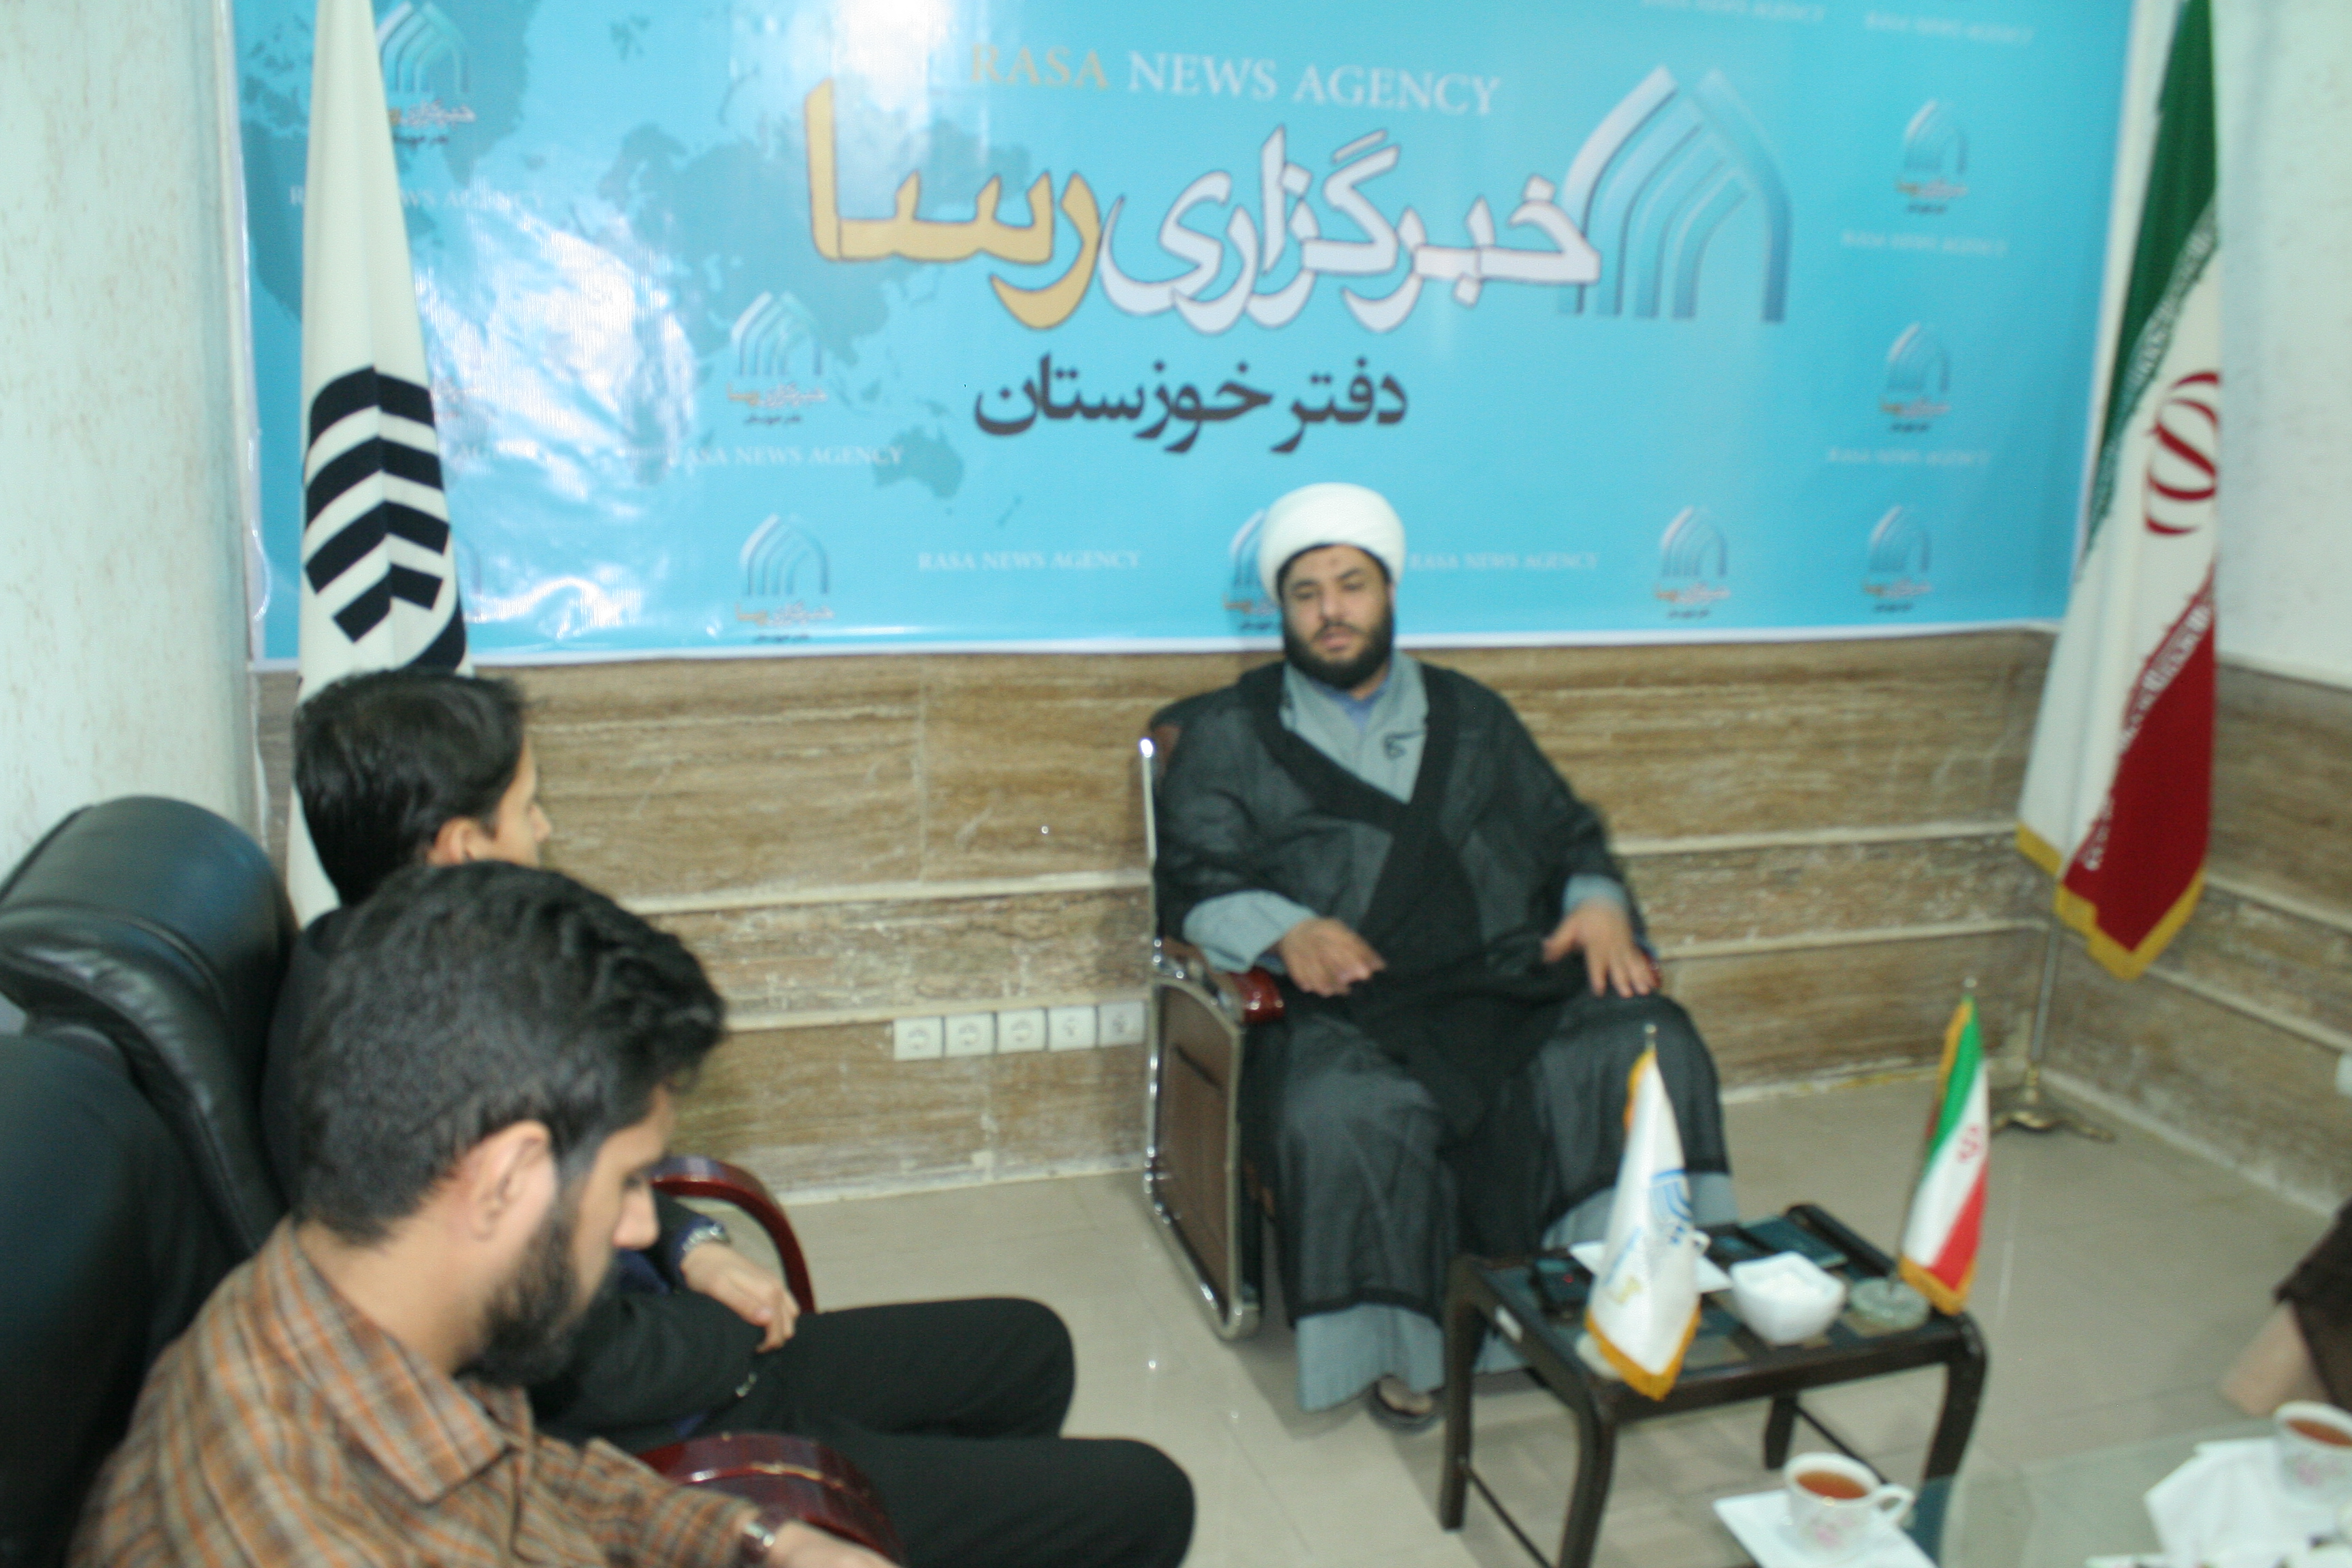 حضور مسؤول اتحادیه انجمن های اسلامی استان در دفتر خبرگزاری رسای خوزستان